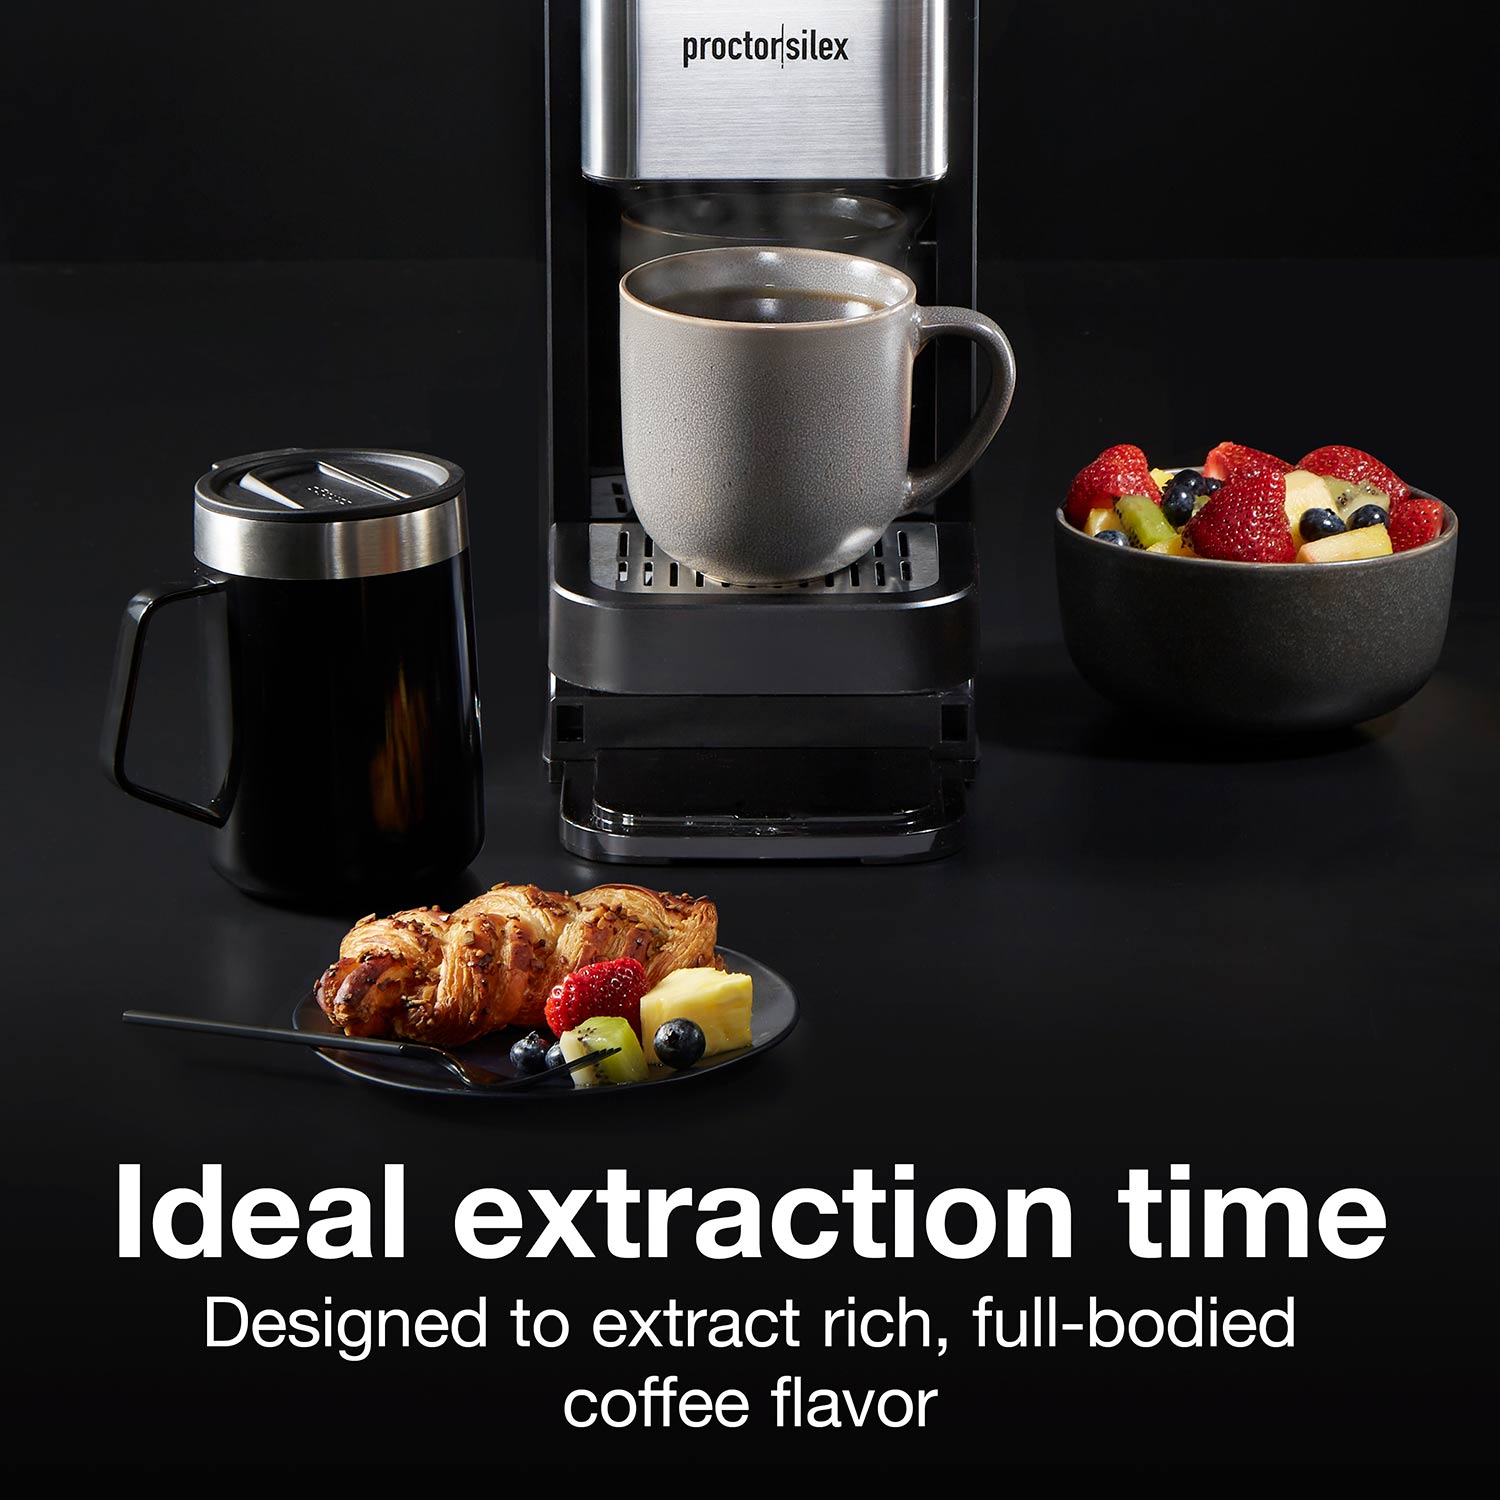 Proctor Silex Coffeemaker, Durable